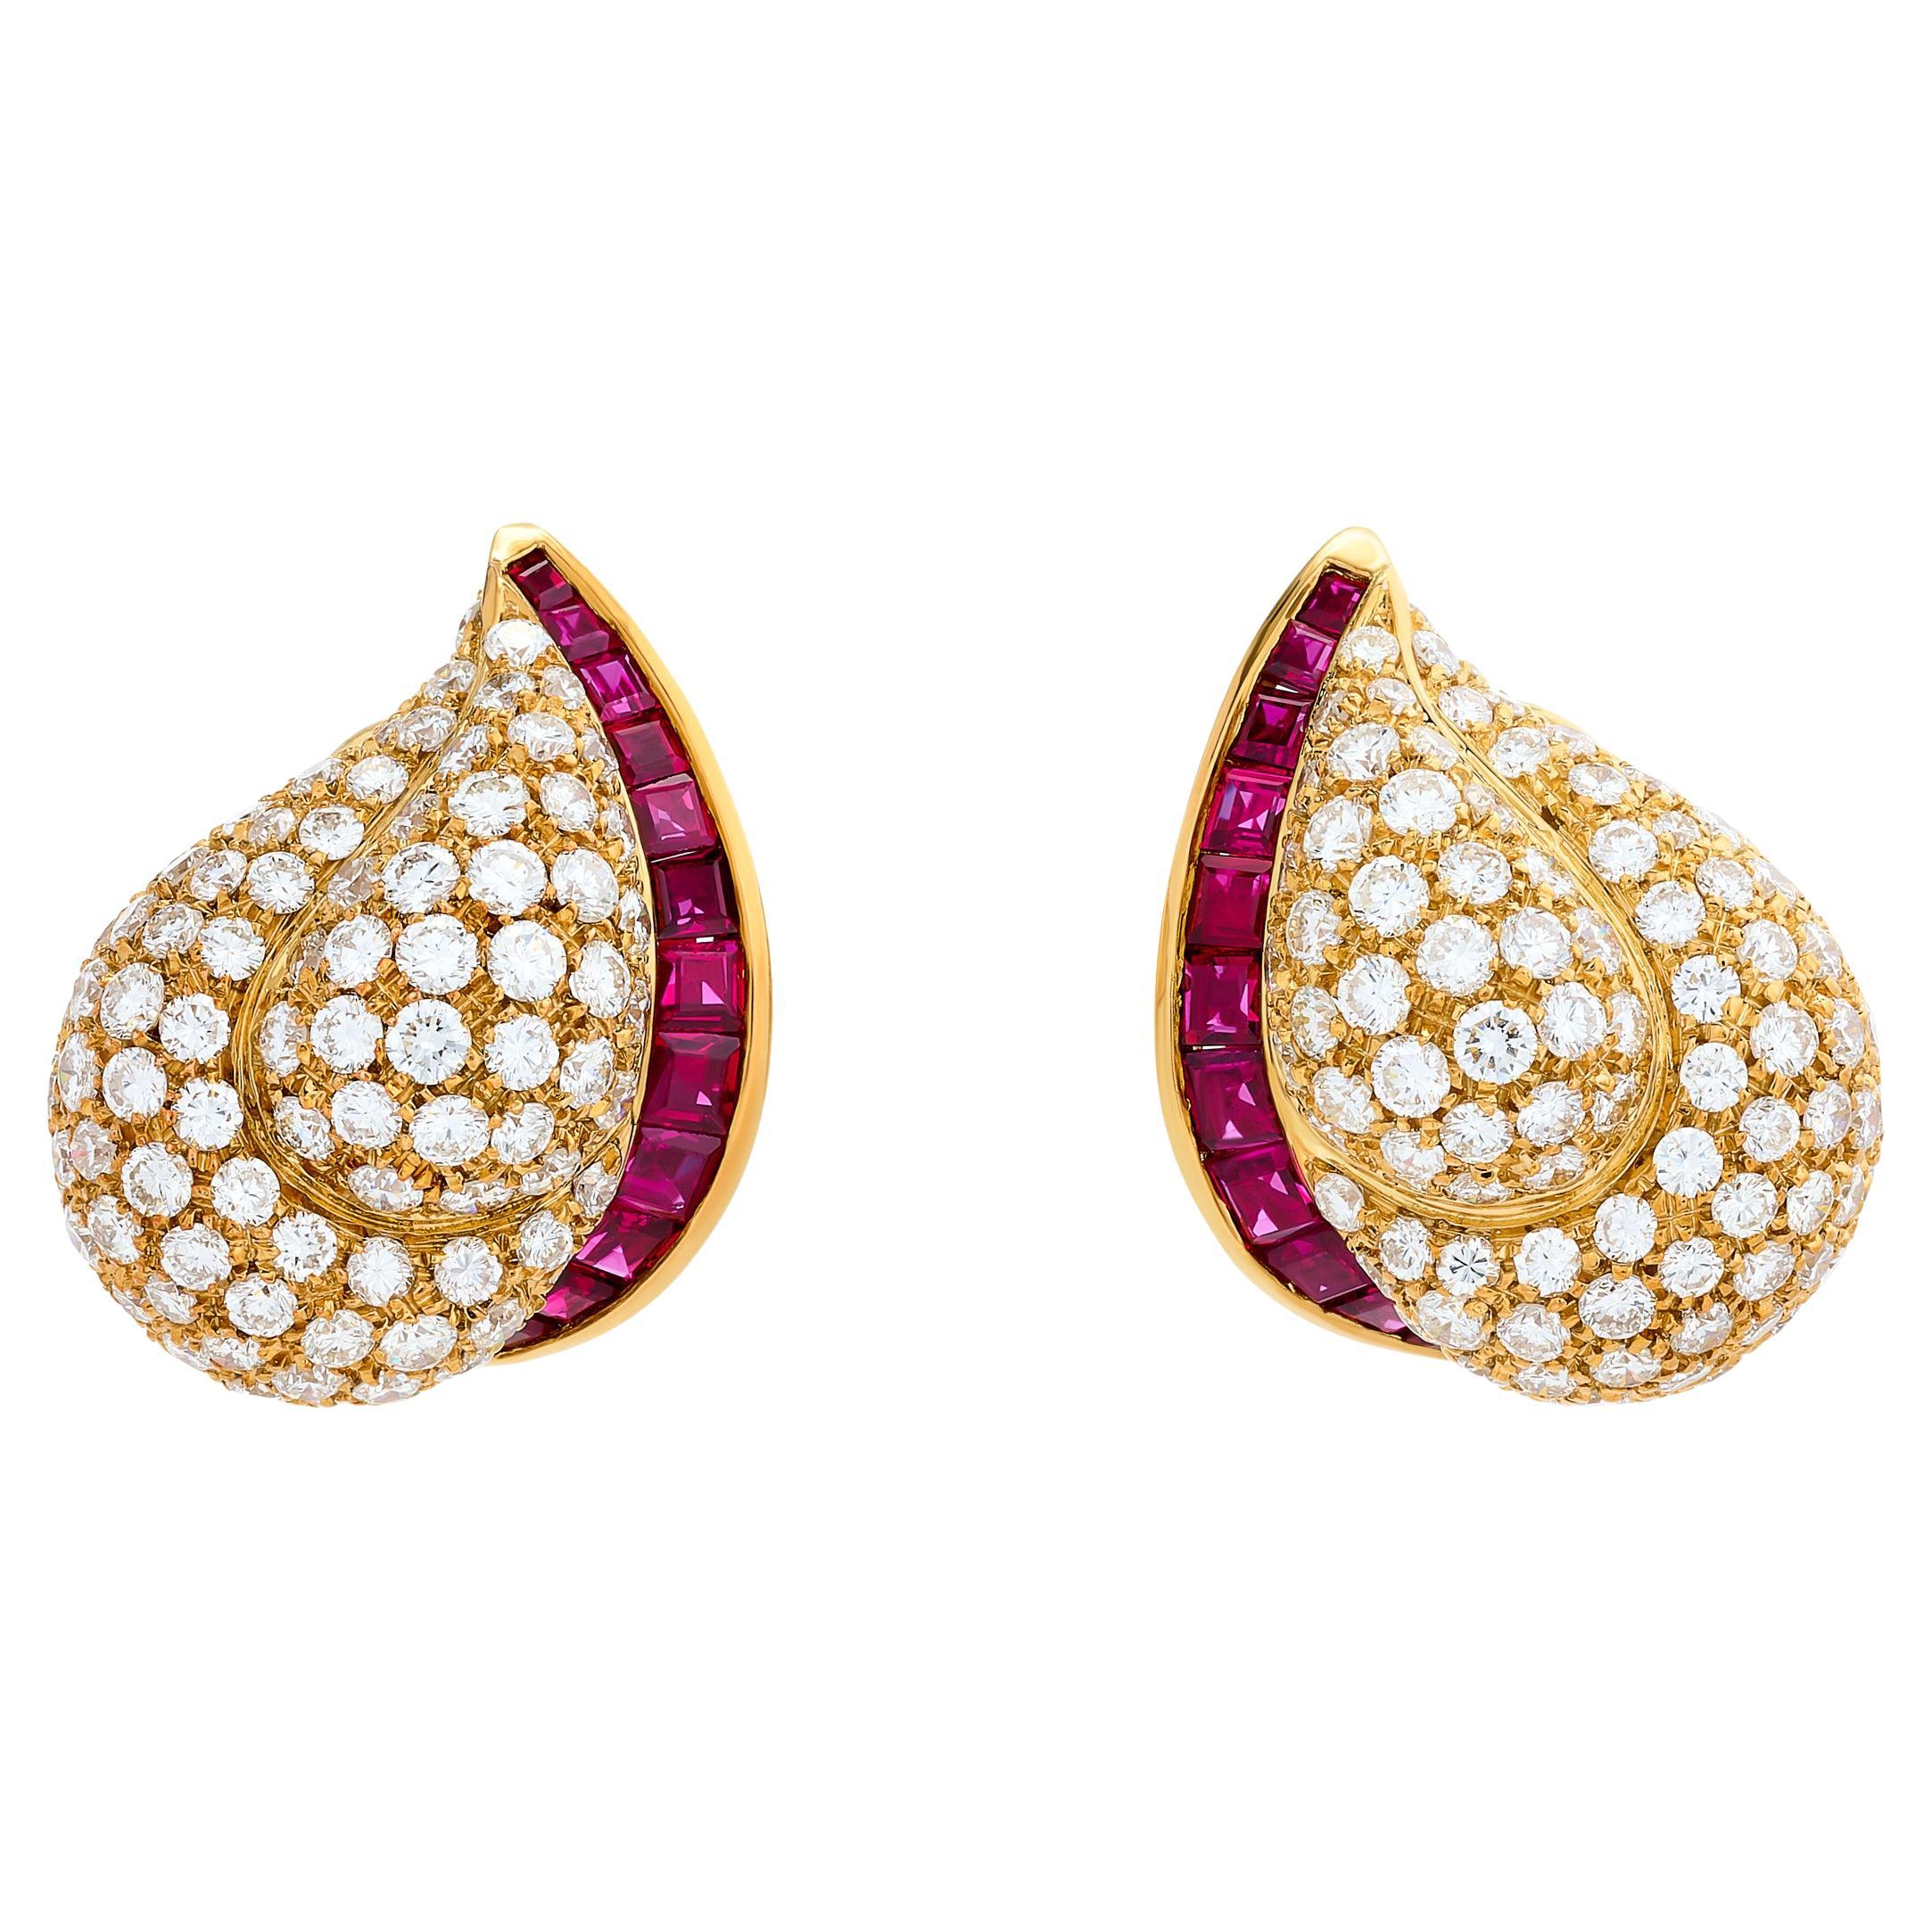 Tiffany & Company, boucles d'oreilles cachemire en or jaune 18 carats, diamants et rubis